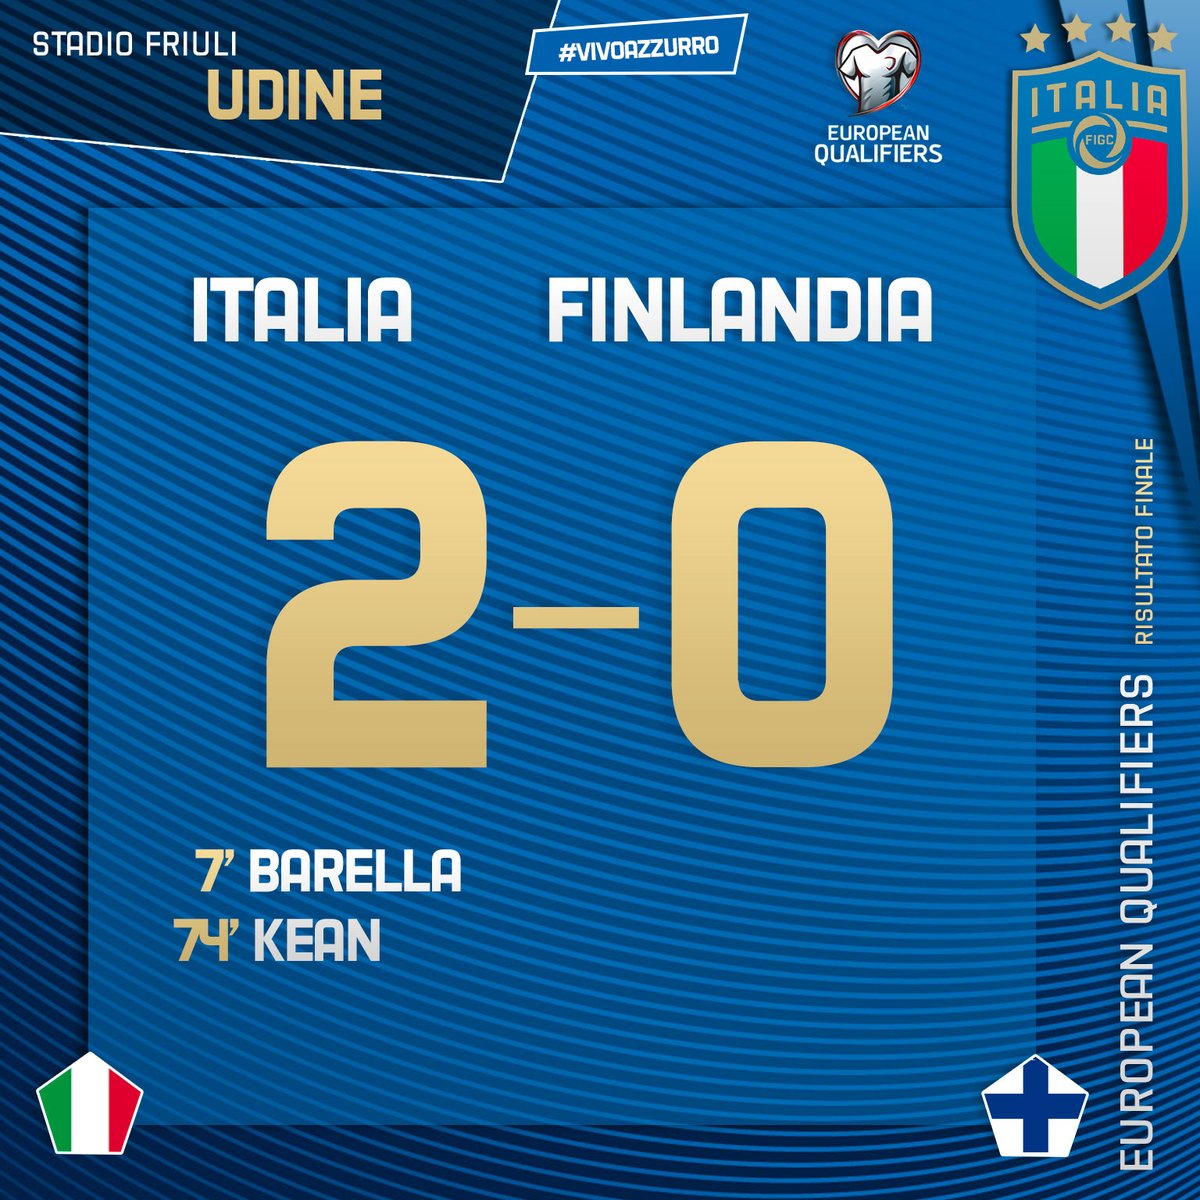 Qualificazioni Euro 2020 - L'Italia vince contro la Finlandia grazie ai gol di Barella e Kean